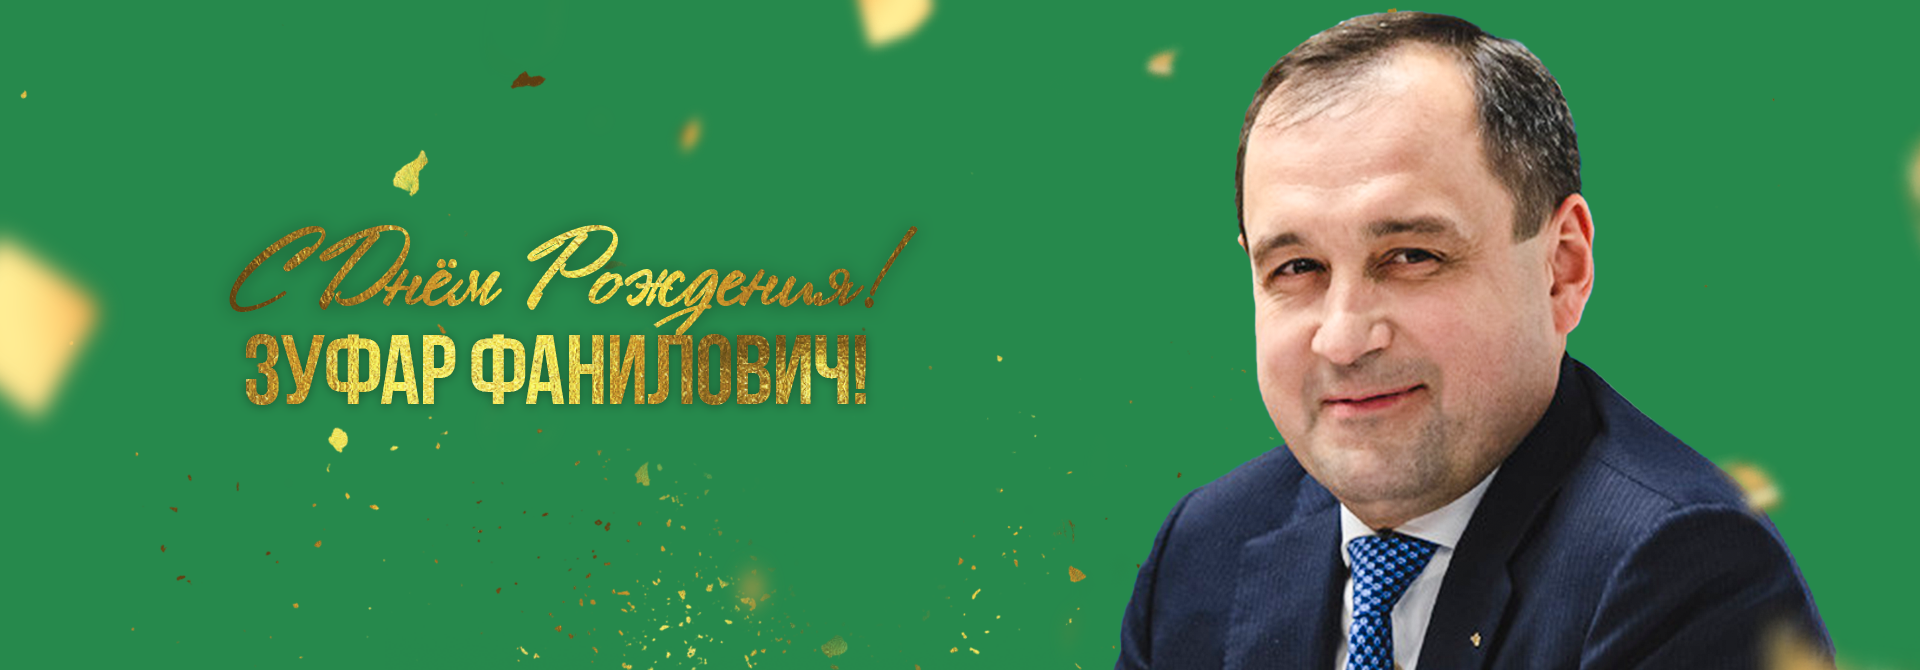 С Днем рождения, Зуфар Фанилович!